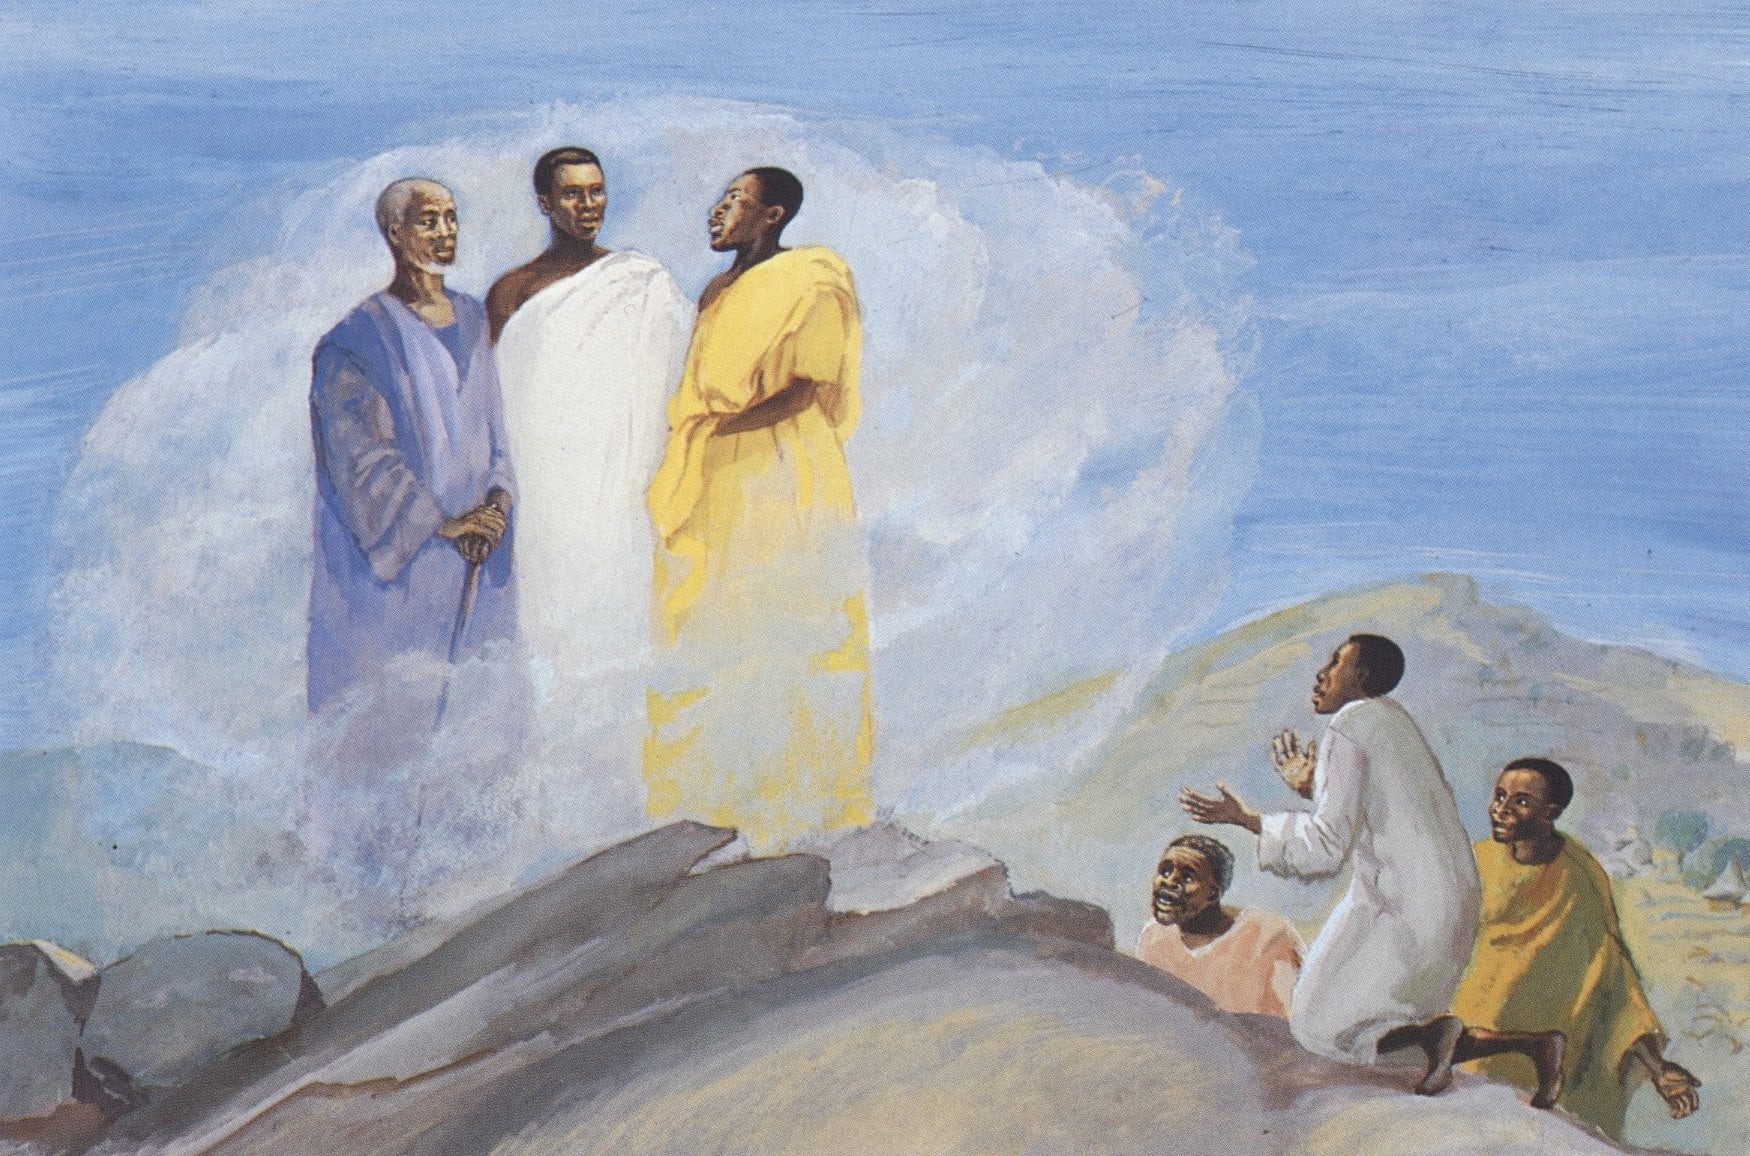 Jesus, Moses, Elijah on the mountain